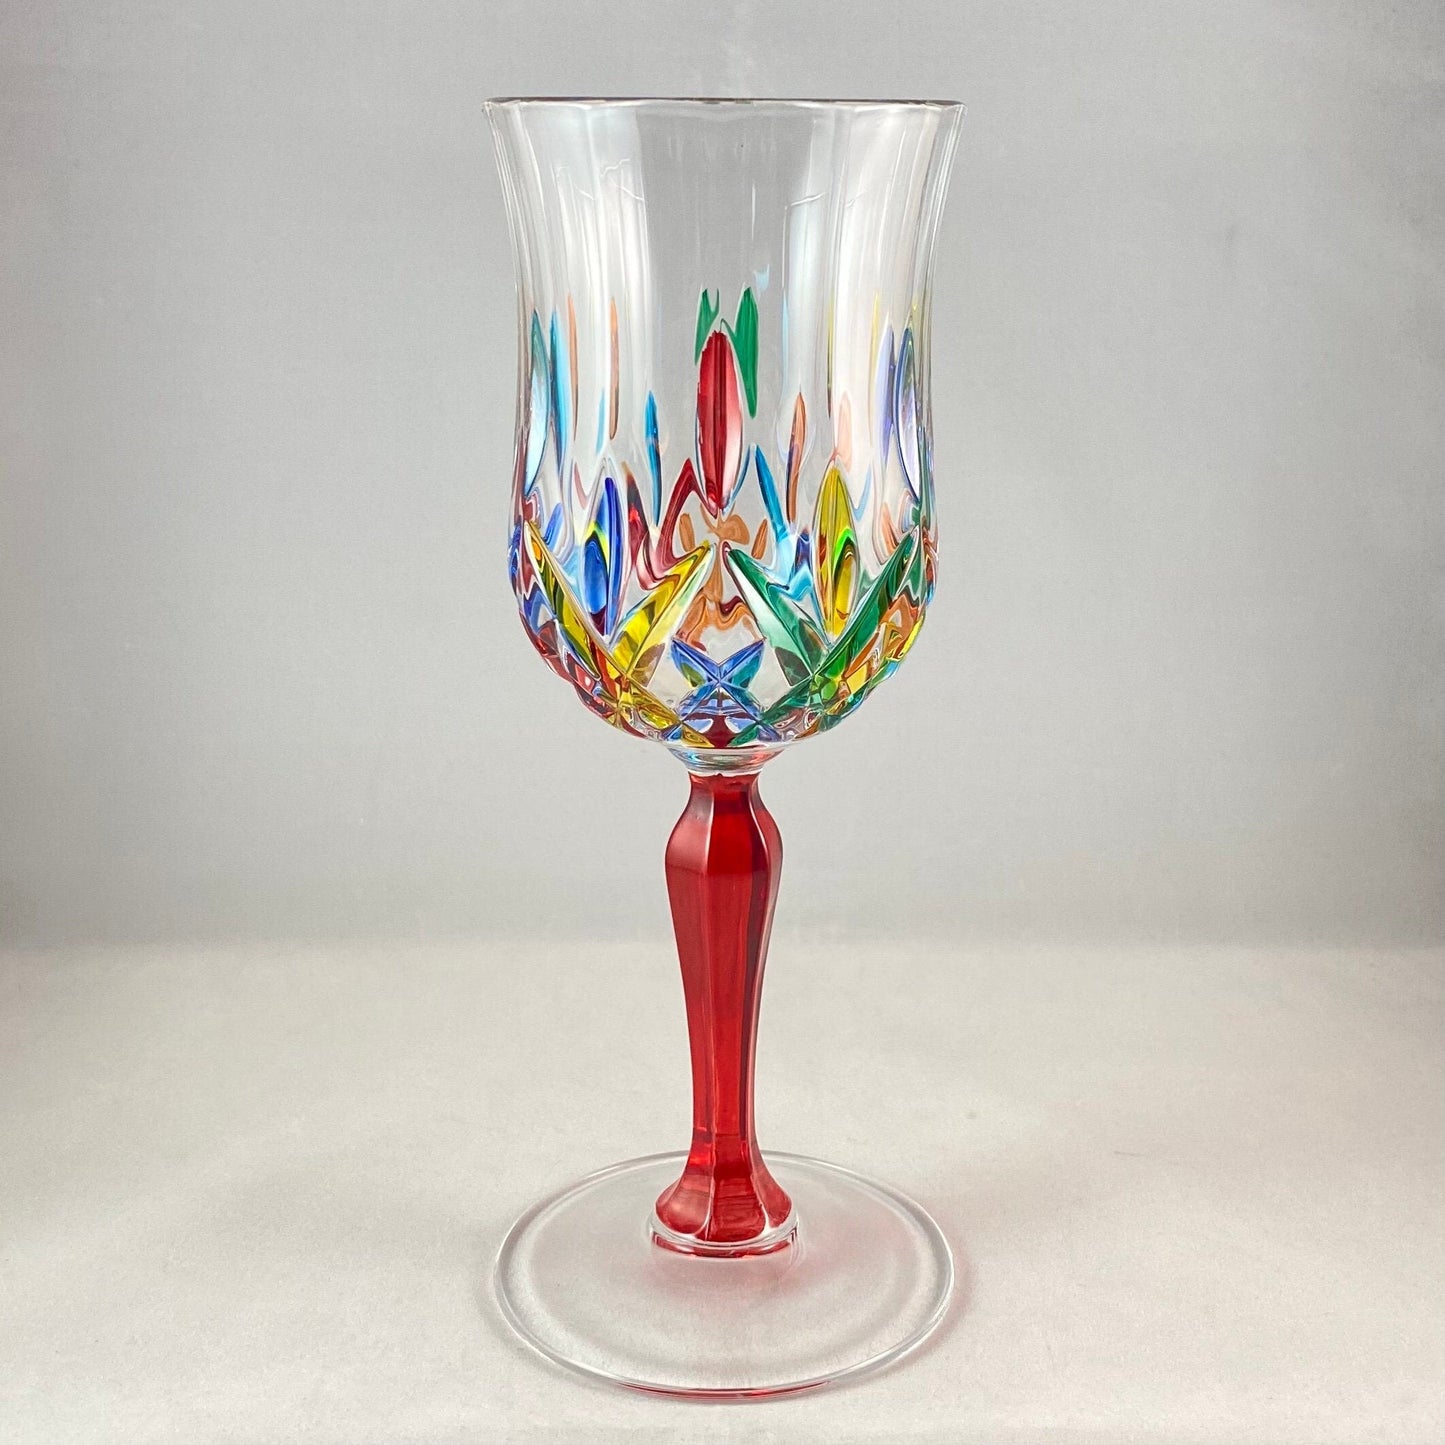 Red Stem Opera Venetian Glass Wine Glass - Handmade in Italy, Colorful Murano Glass